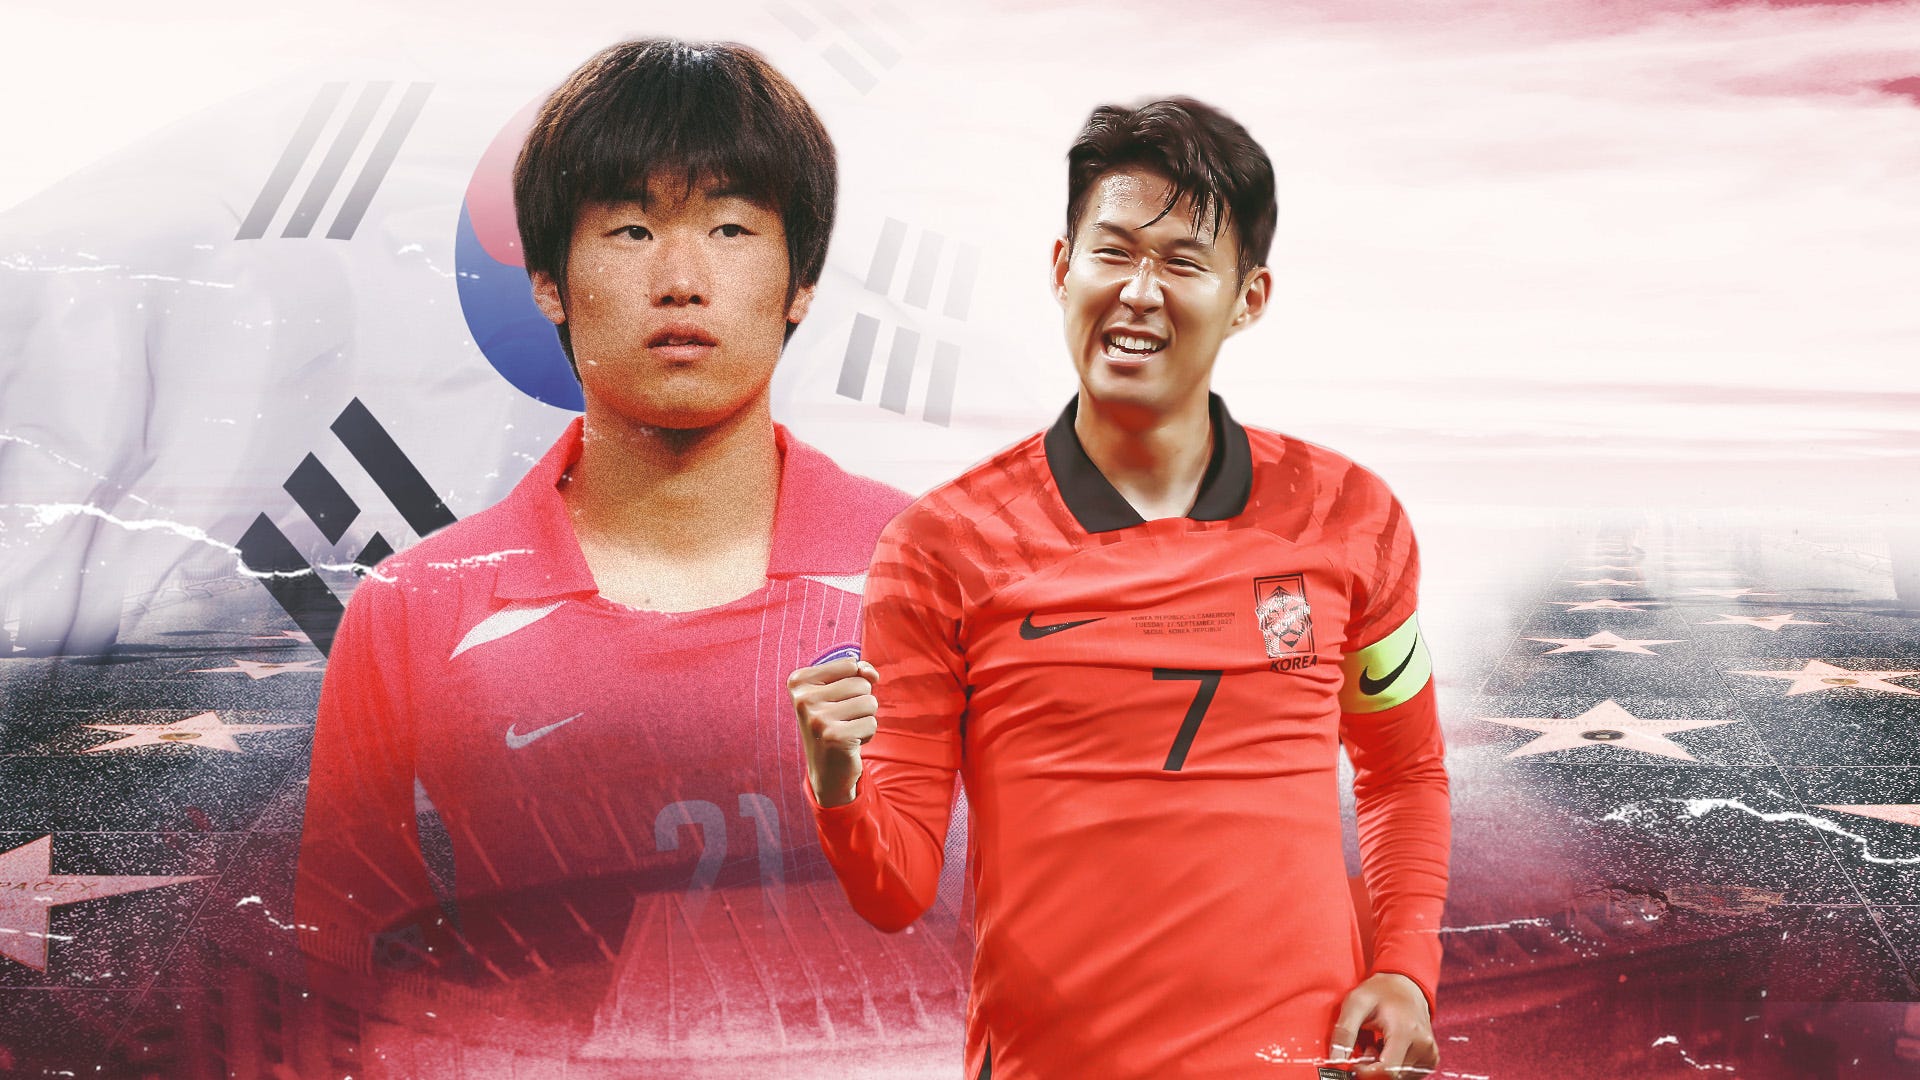 Đội hình mơ ước của Hàn Quốc đã được chọn với hai ngôi sao hàng đầu là Son và Park. Những pha bóng tuyệt đỉnh của cả hai chắc chắn sẽ khiến bạn phát cuồng. Đến với hình ảnh liên quan để cảm nhận thêm sức mạnh và tài năng của hai ngôi sao này.